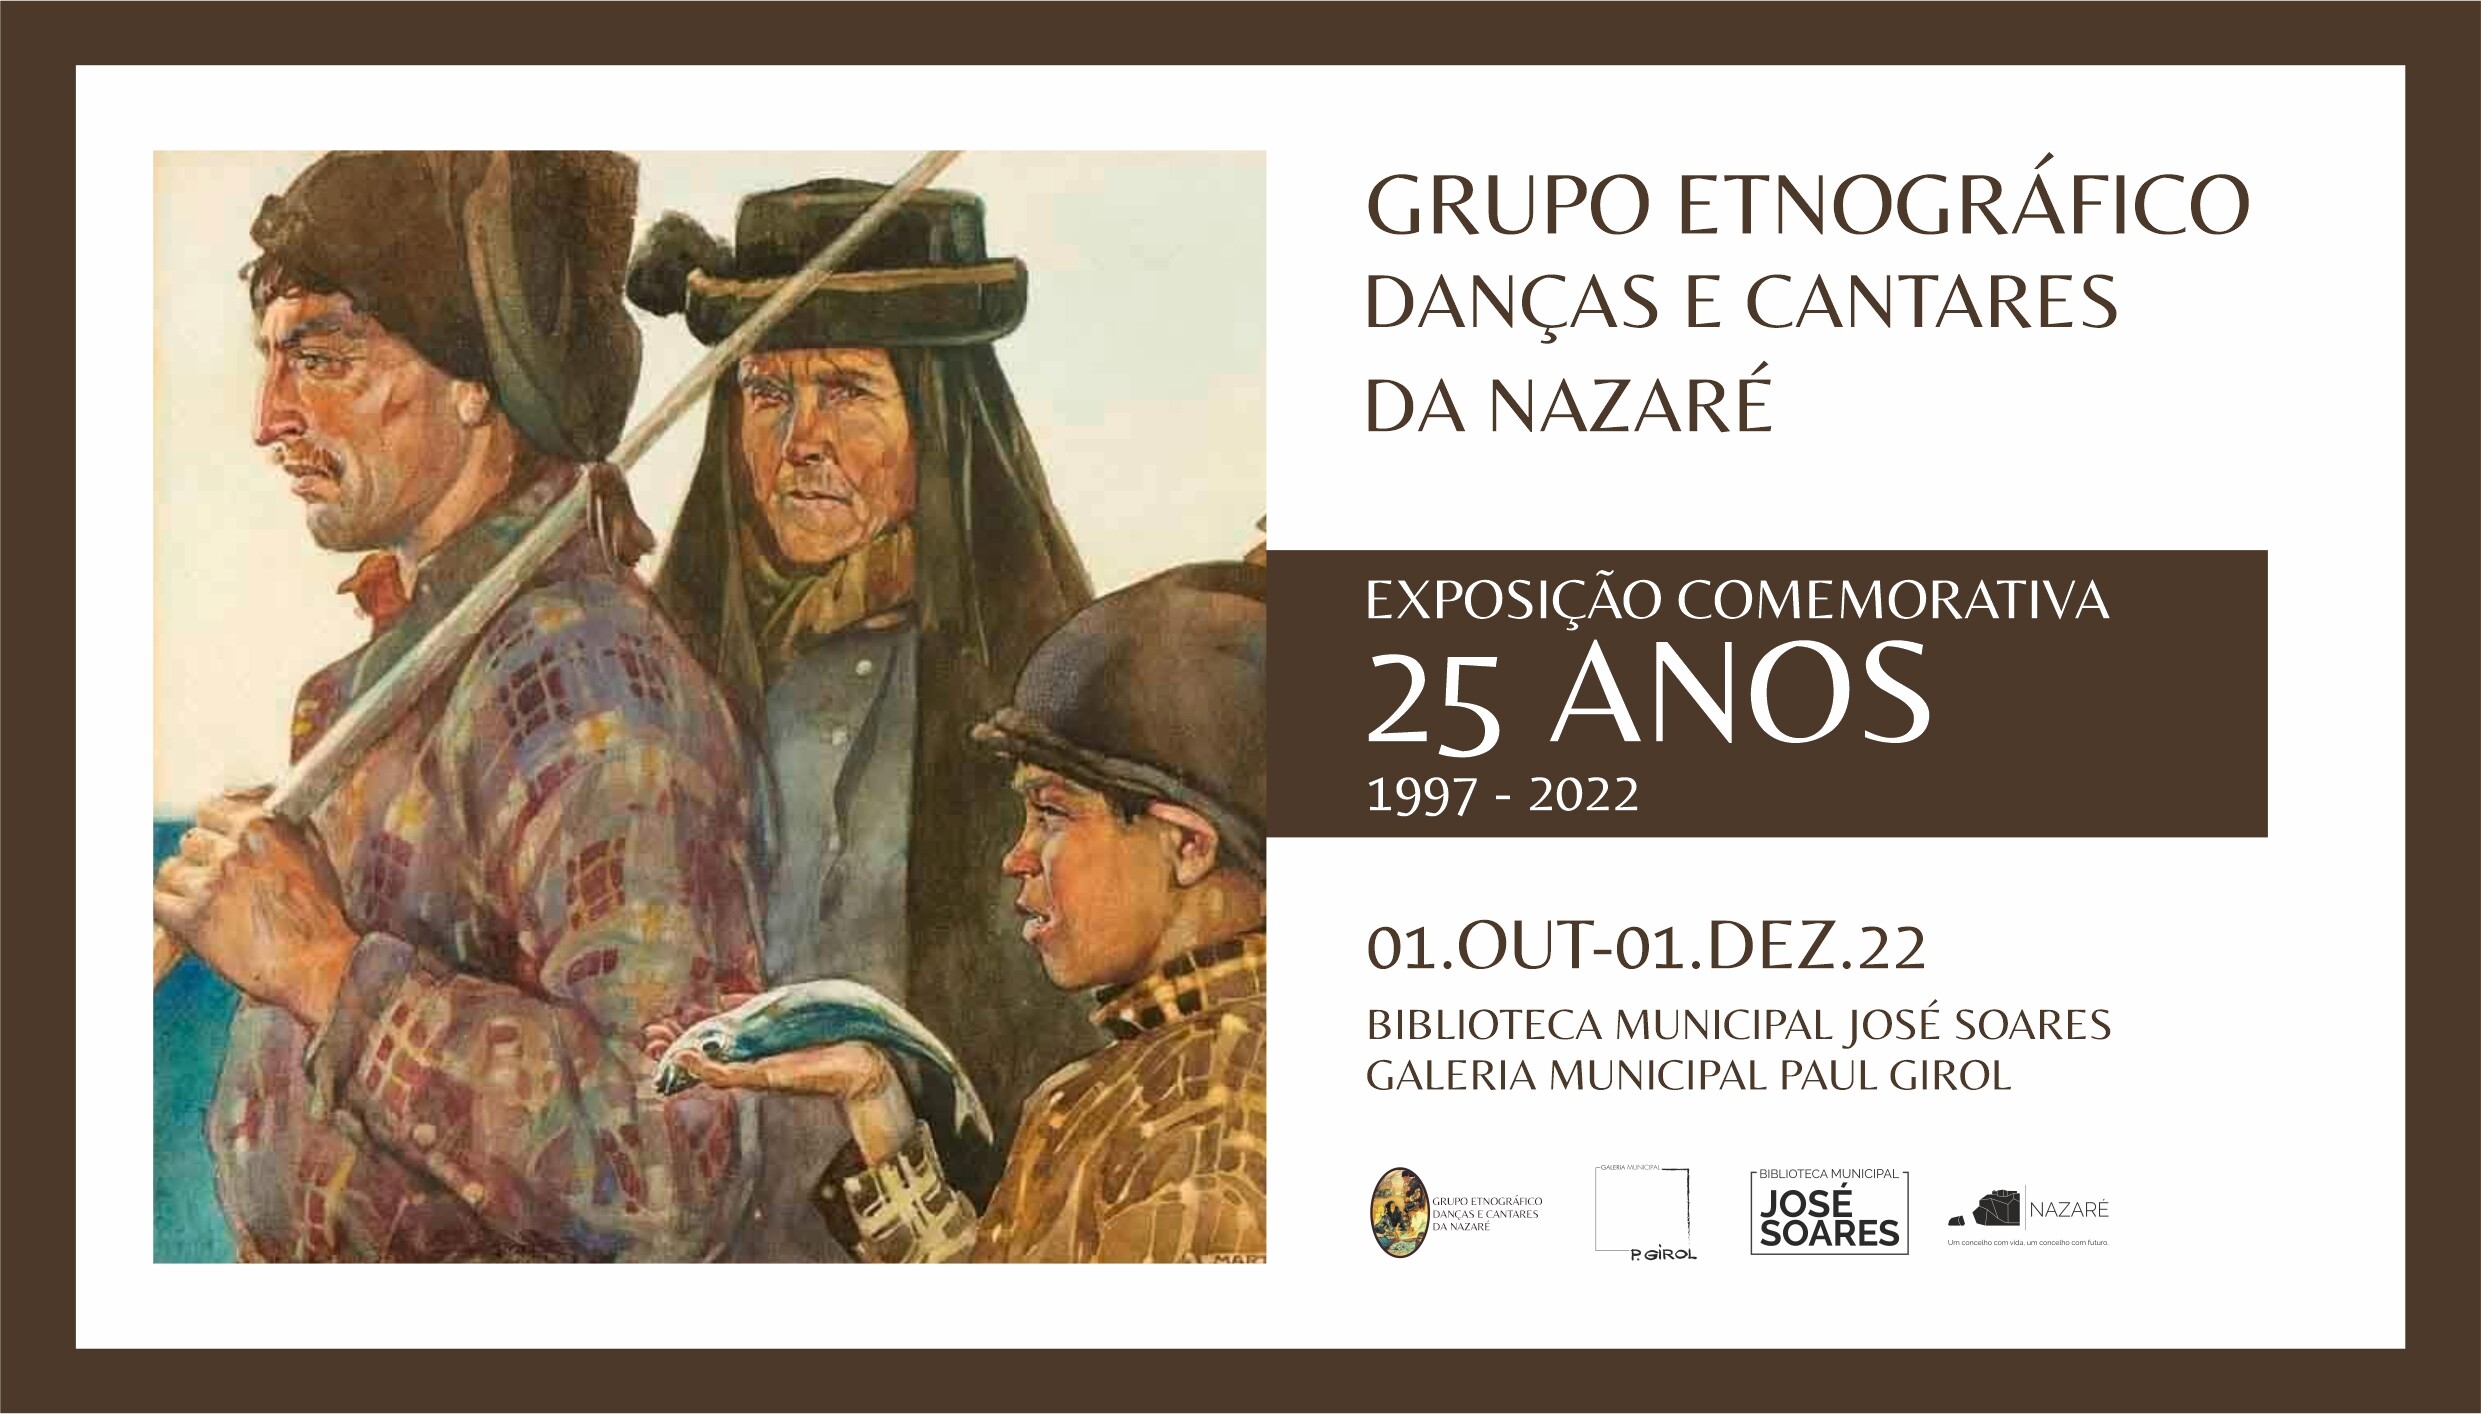 Galeria Paul Girol expõe 25 anos de Grupo Etnográfico Danças e Cantares da Nazaré